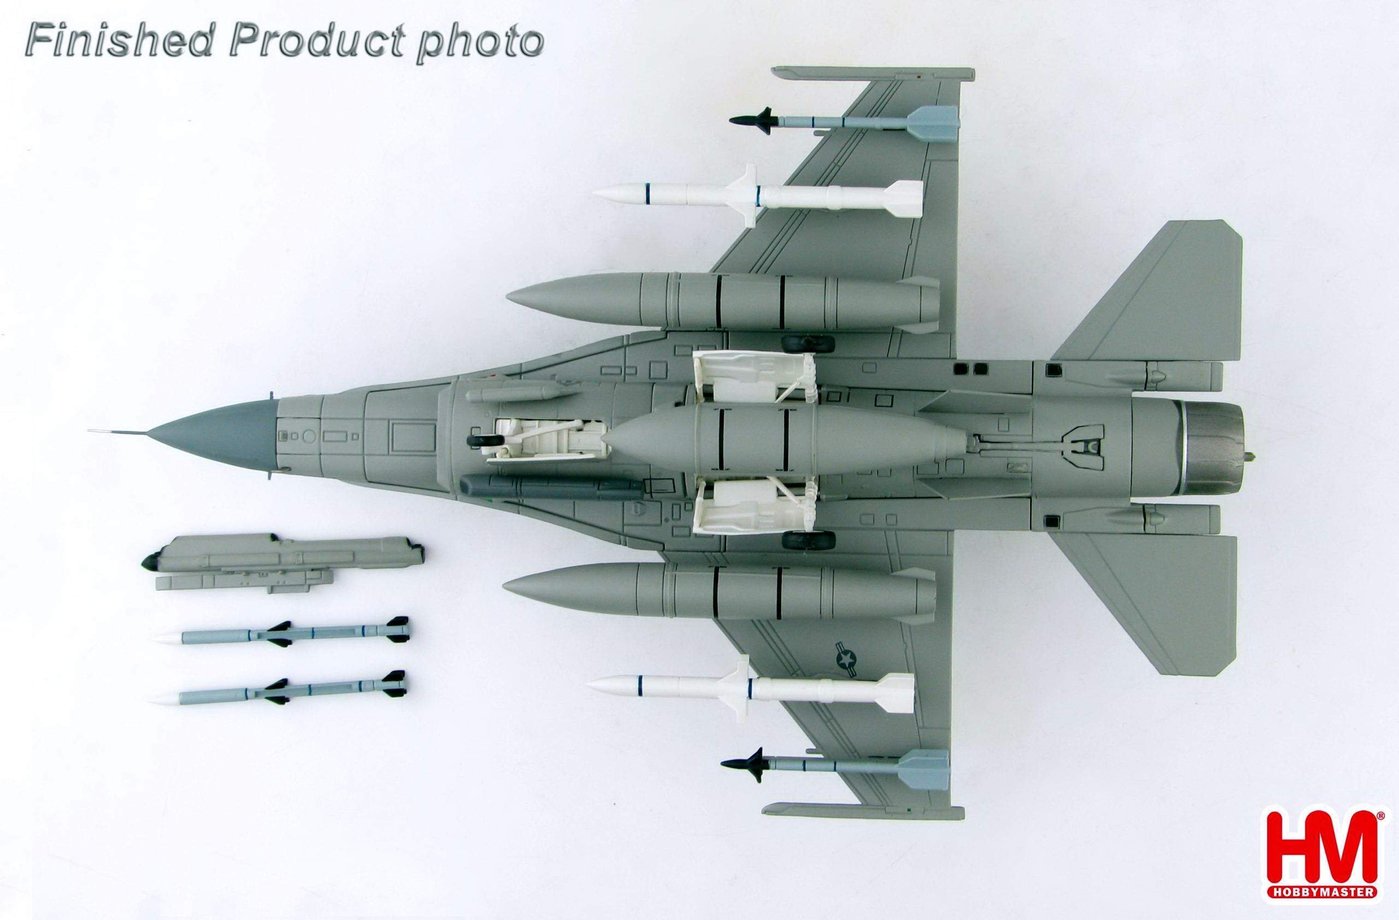 【魔玩達人】1/72 HM HA3897 F-16CM 美國太平洋空軍 毒蛇演示小組 呼號Primo小松基地【新品特價】